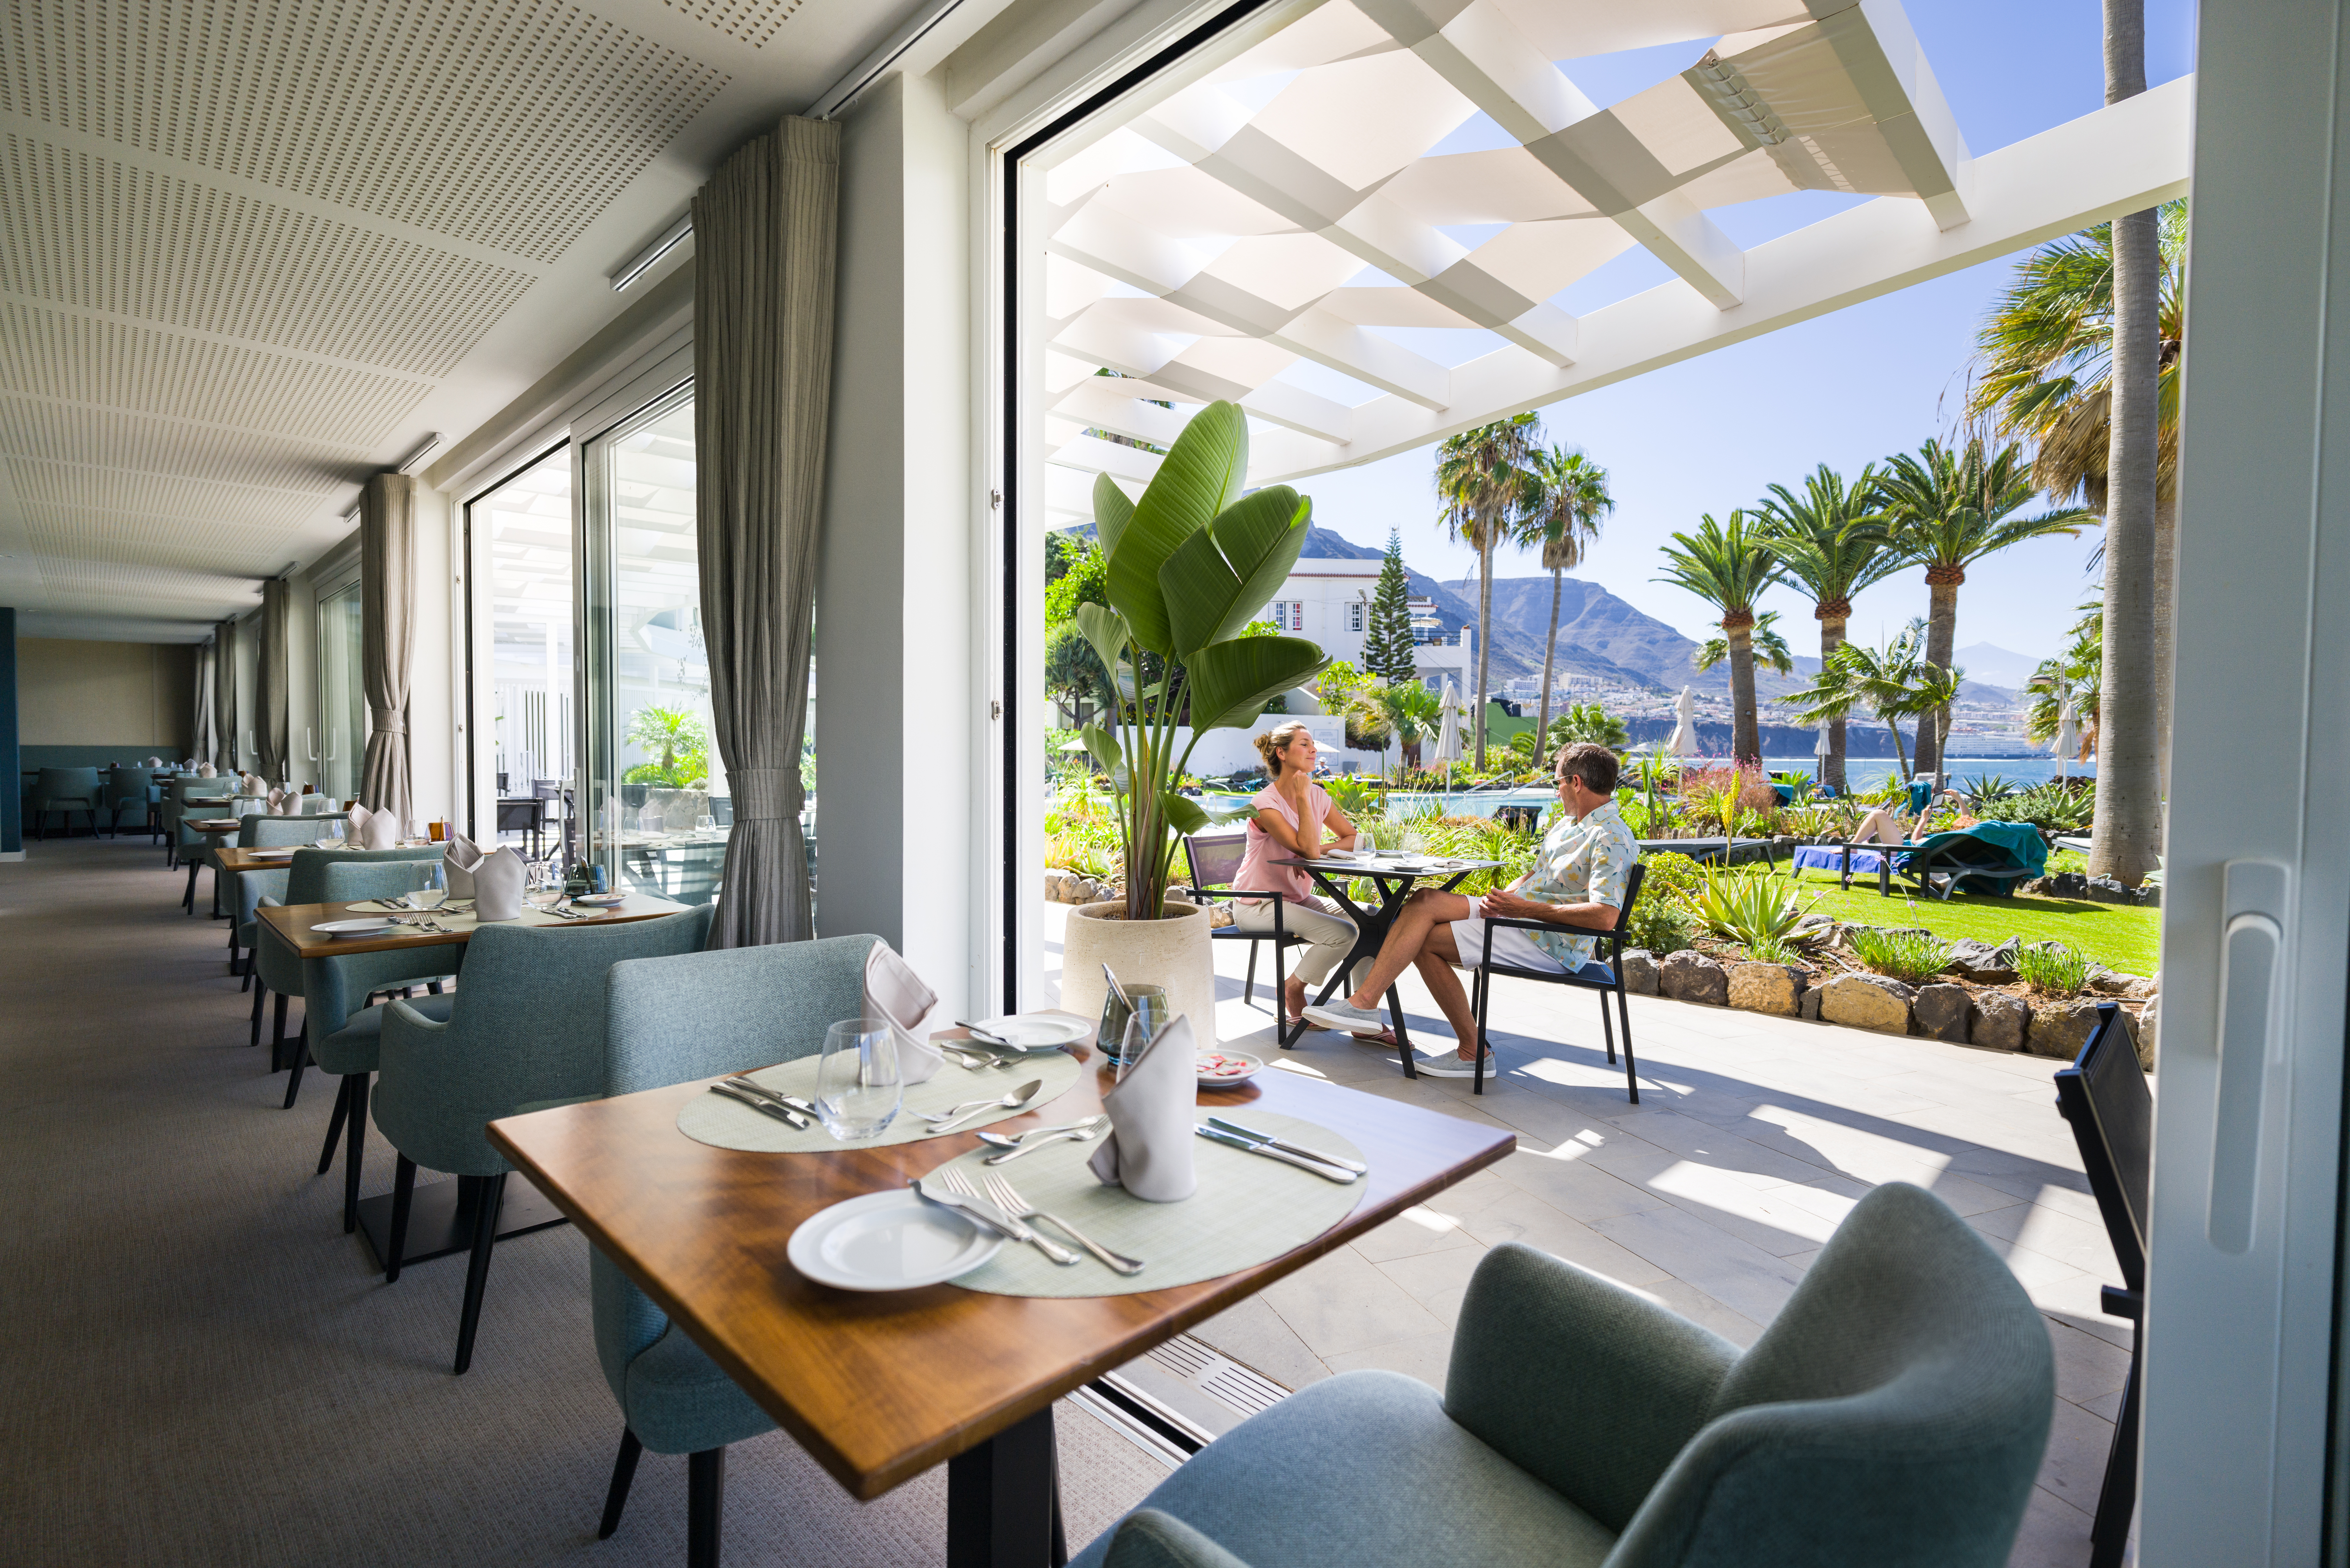 Gutschein im Wert von 1.500 Euro für das OCÉANO Health Spa Hotel, Teneriffa